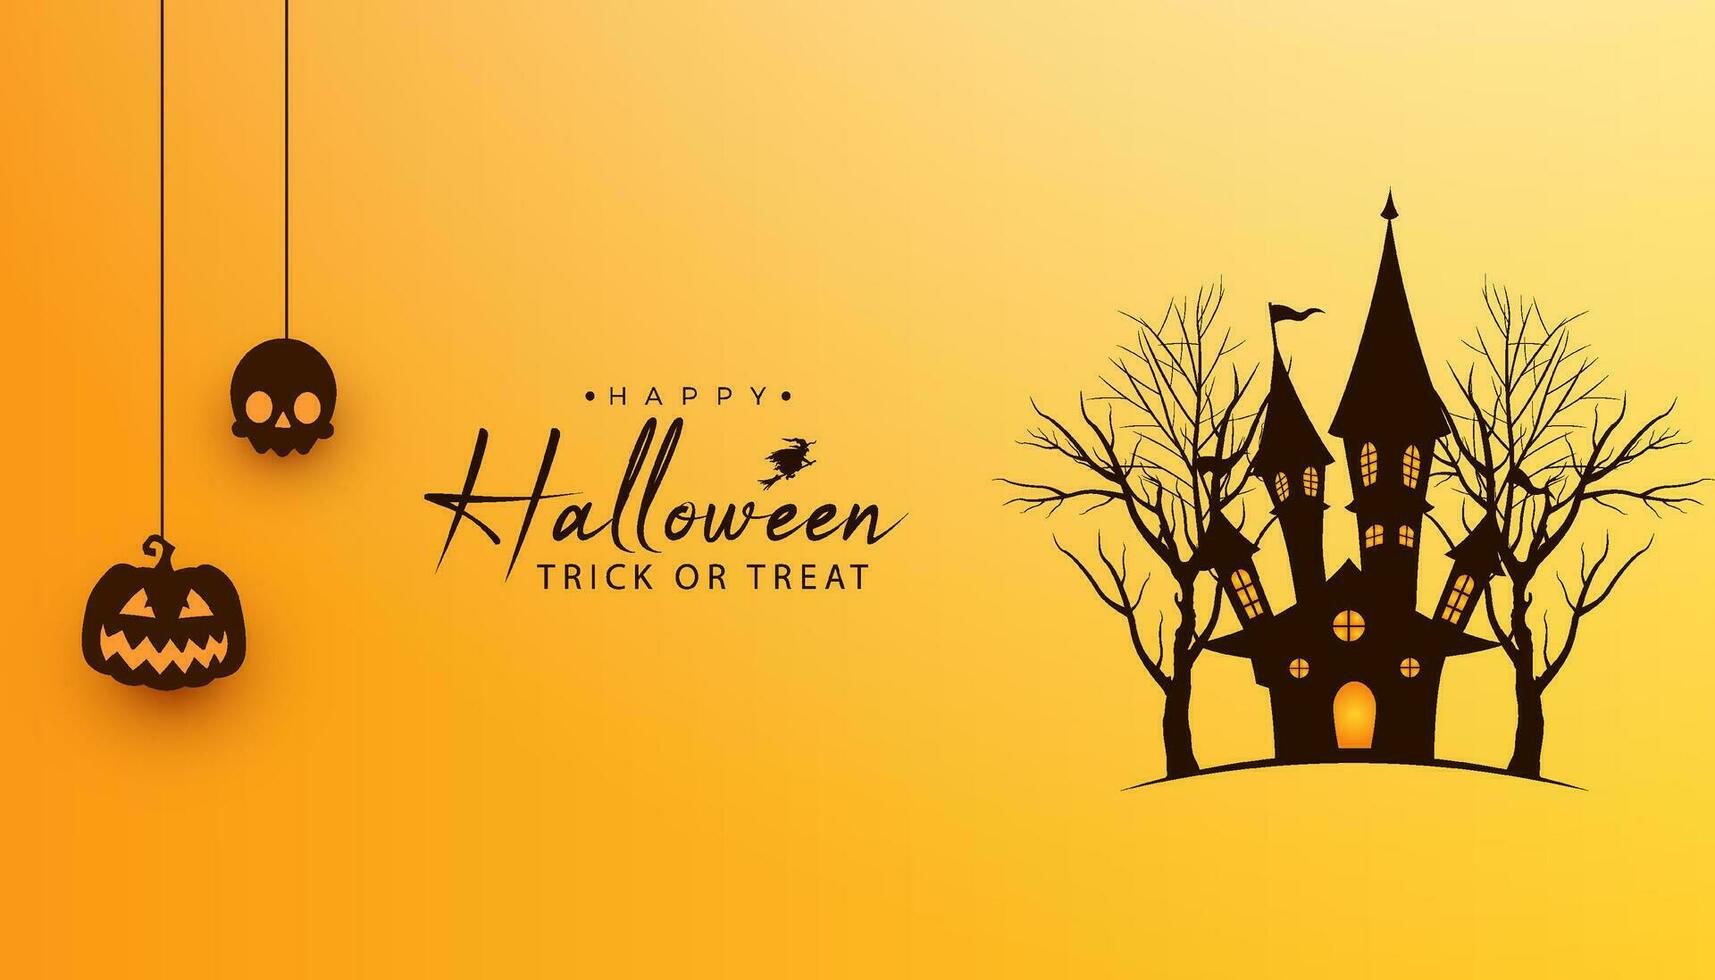 Halloween Banner Hintergrund mit hängend Halloween Elemente und Halloween Haus mit tot Bäume vektor